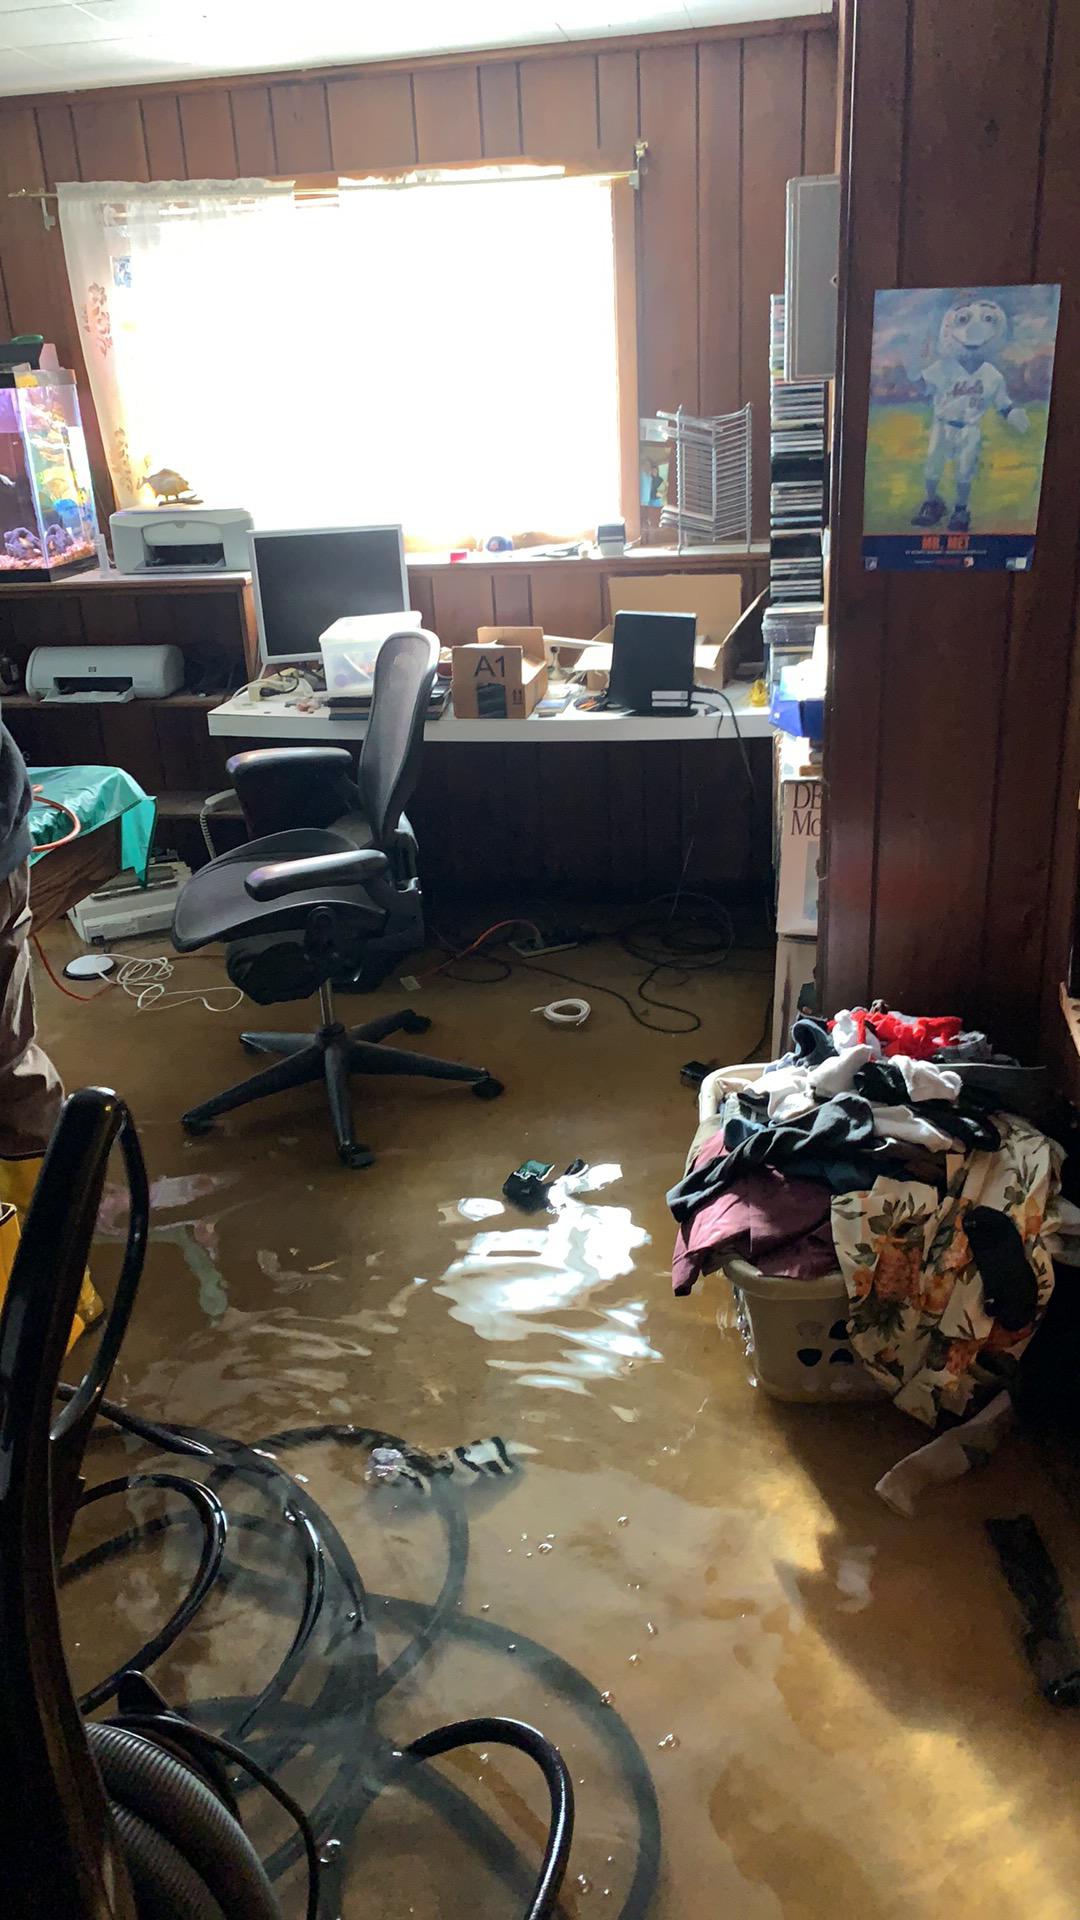 Flood in basement